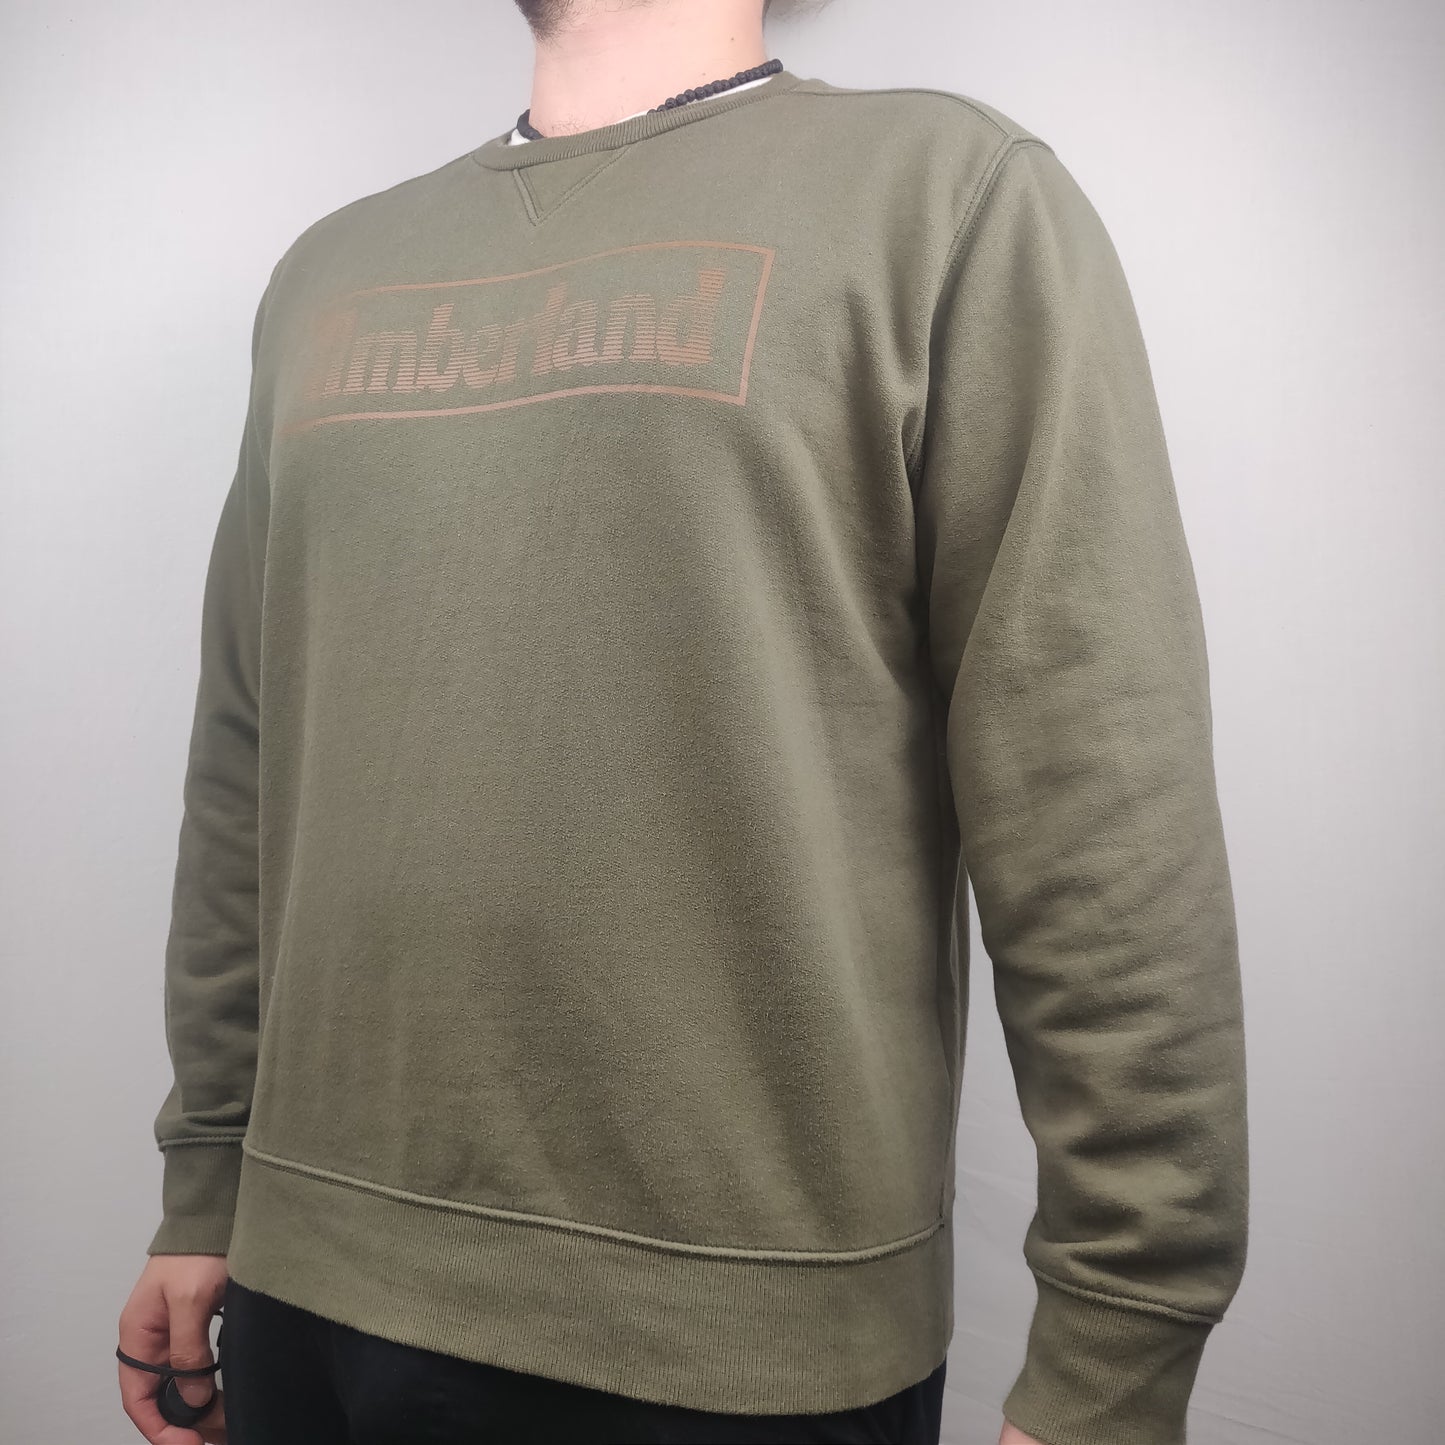 Timberland Green Sweatshirt Men Size Large